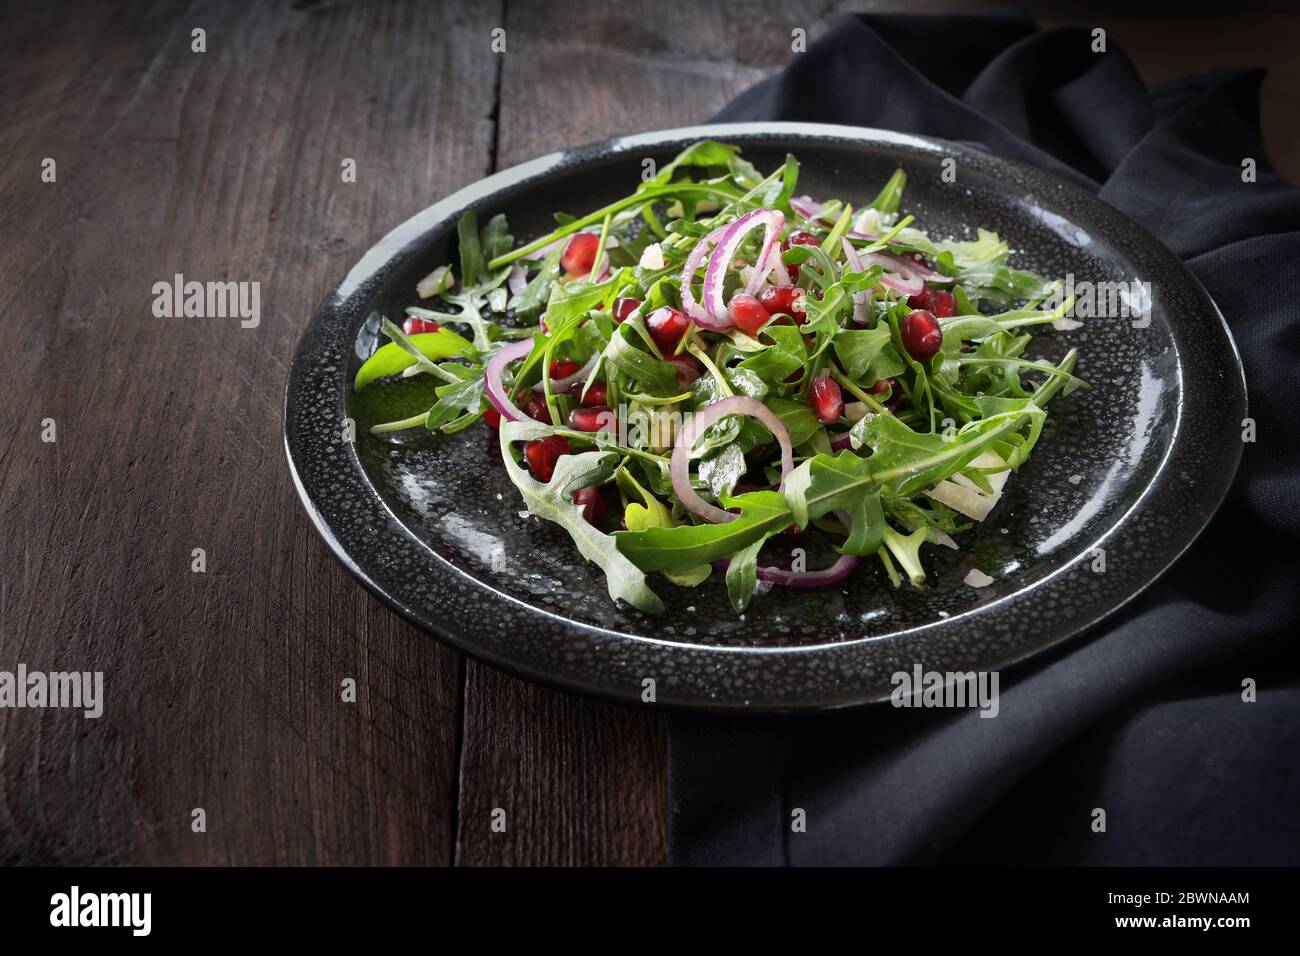 Frischer Rucola-Salat oder Rucola mit Granatapfelkernen, roten Zwiebeln und Feta-Käse auf einem schwarzen Gefleckteller auf einem dunklen Holztisch, Kopierraum, ausgewählt Stockfoto